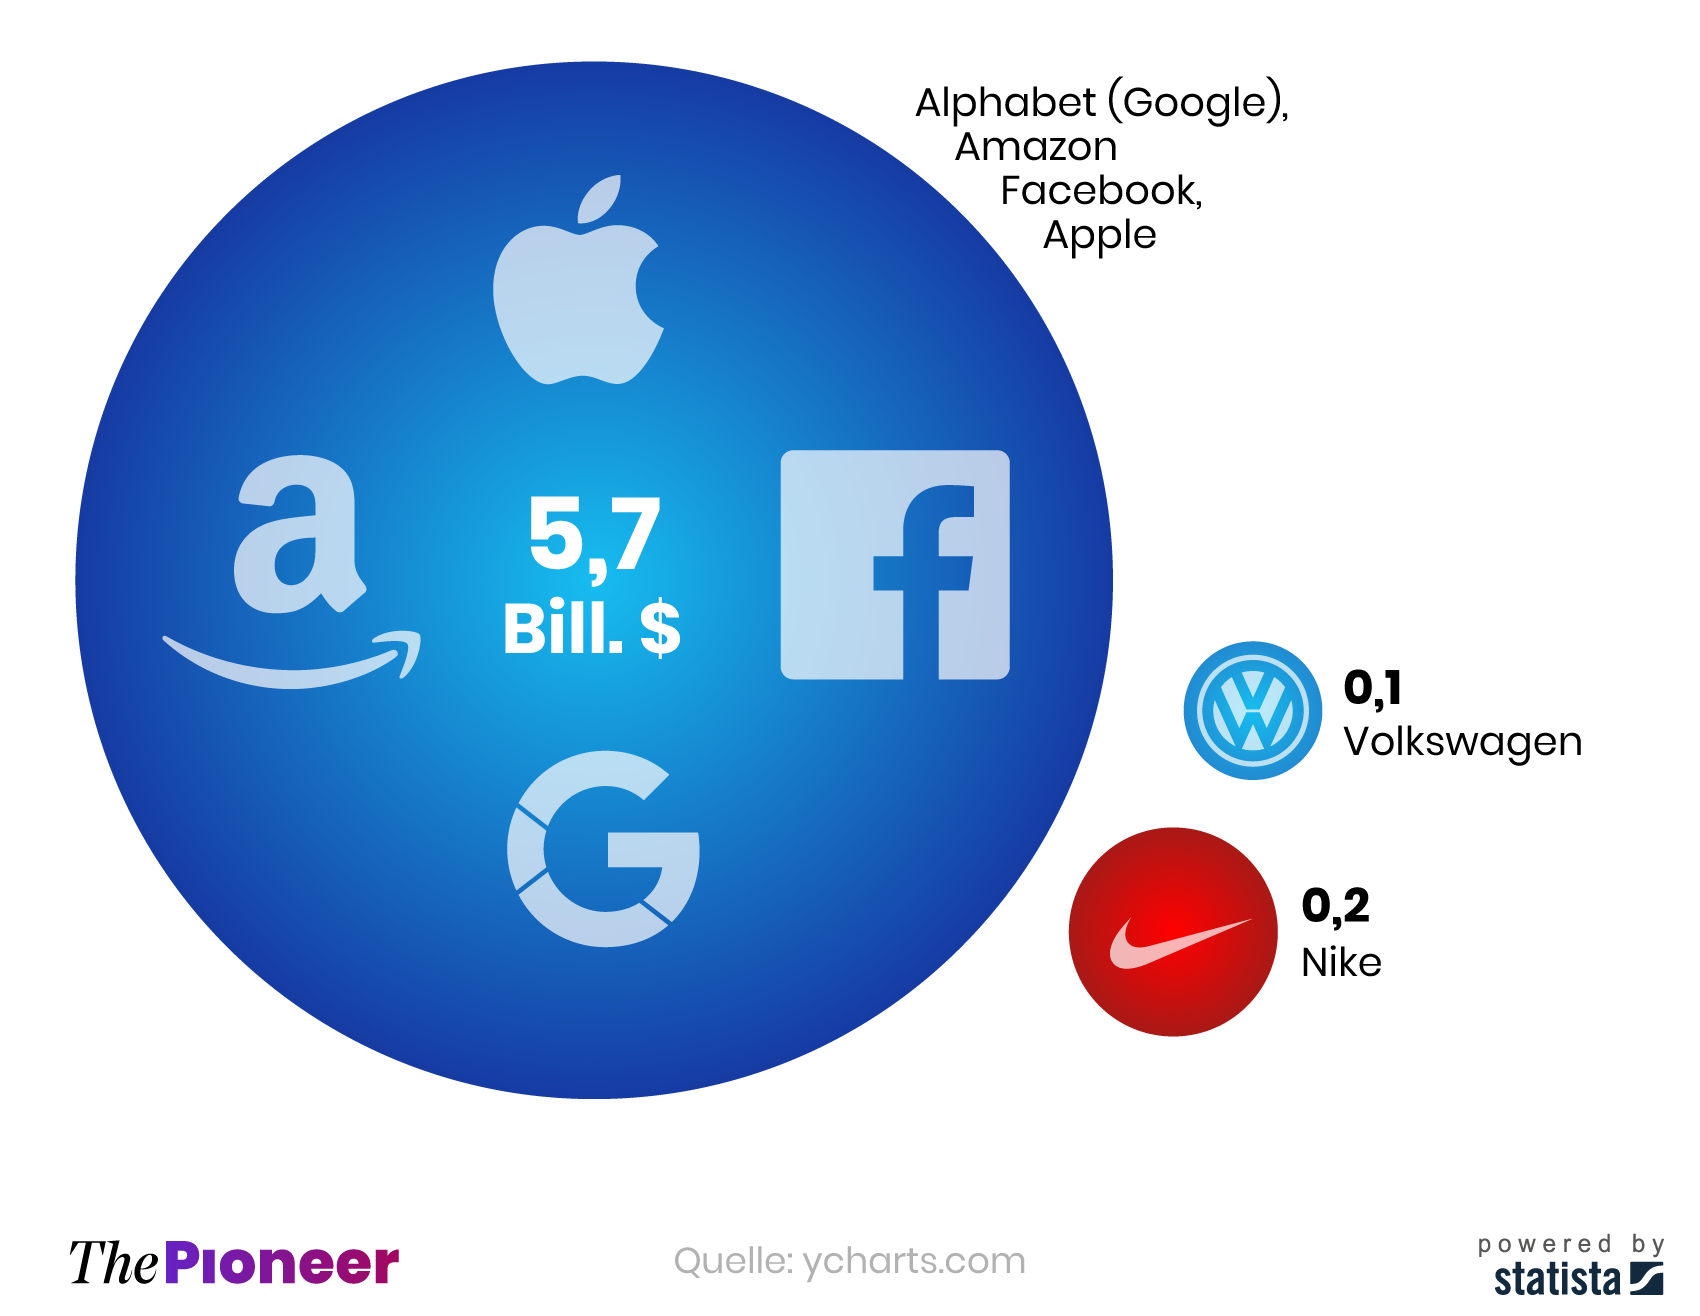 Börsenwert der vier GAFA-Konzerne (Alphabet/Google, Amazon, Facebook, Apple) im Vergleich mit den Börsenwerten von Volkswagen und Nike, in Billionen US-Dollar